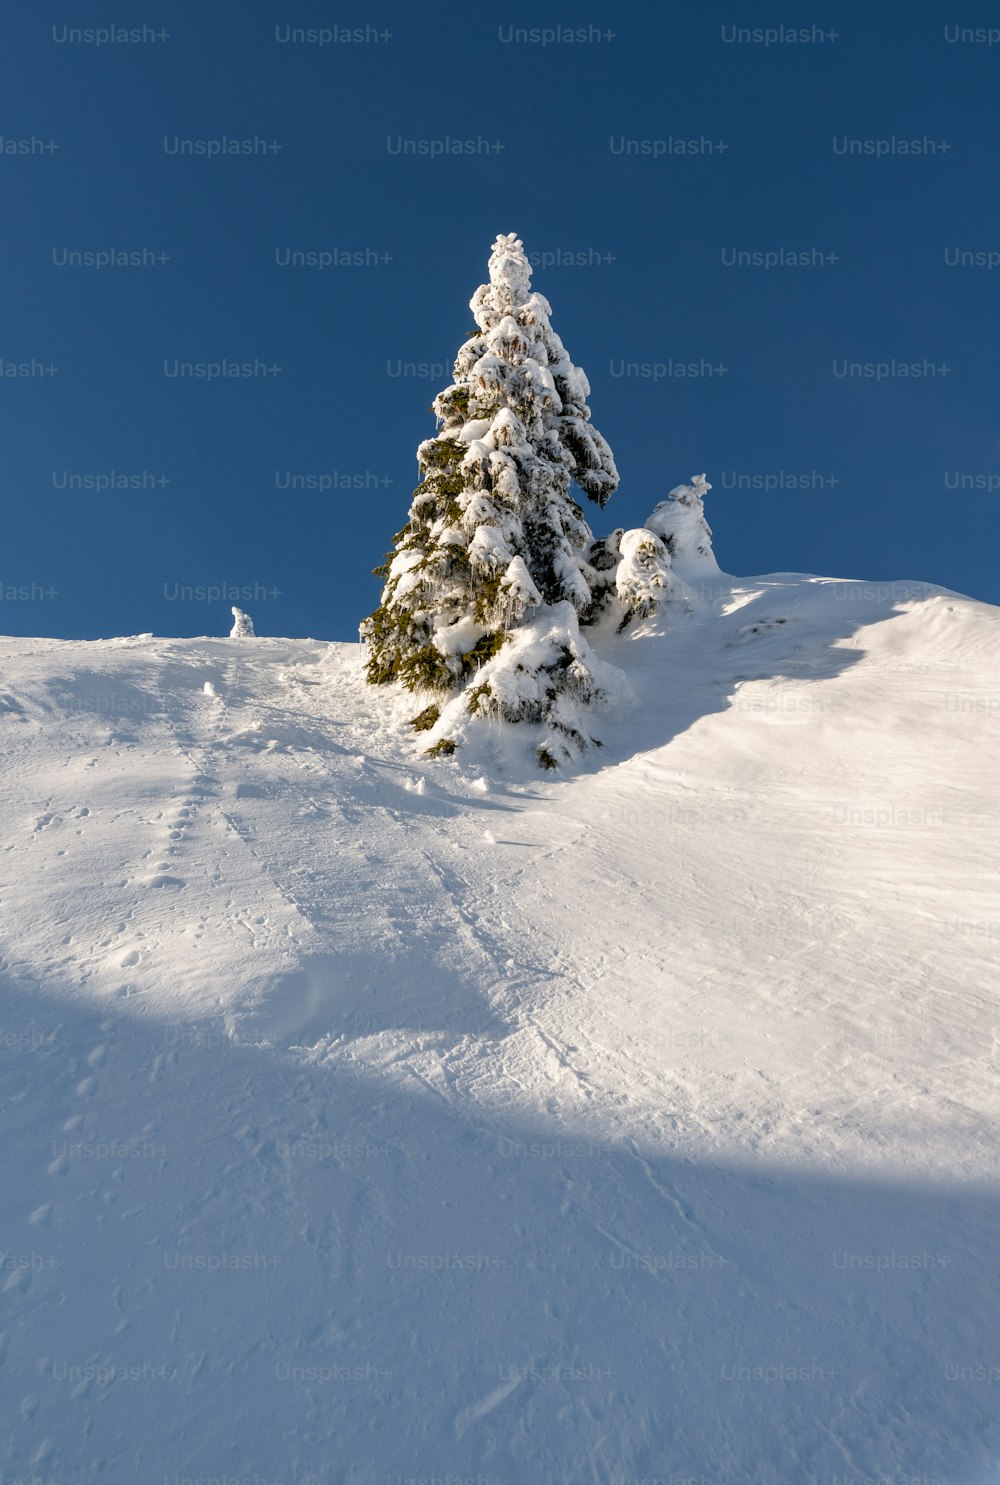 Un pino solitario en una colina nevada